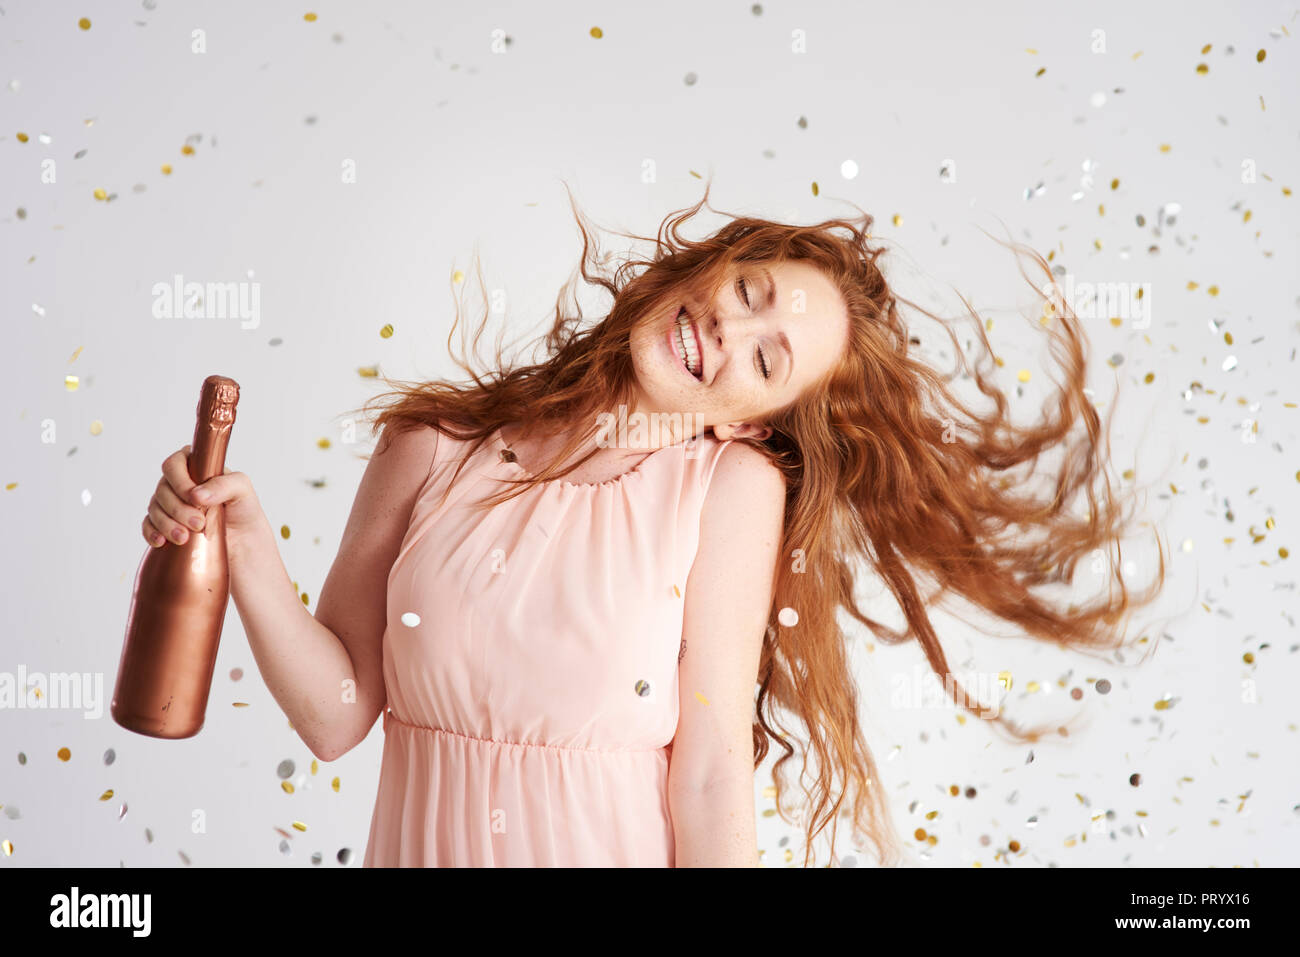 Portrait of happy young woman dancing avec bouteille de champagne Banque D'Images